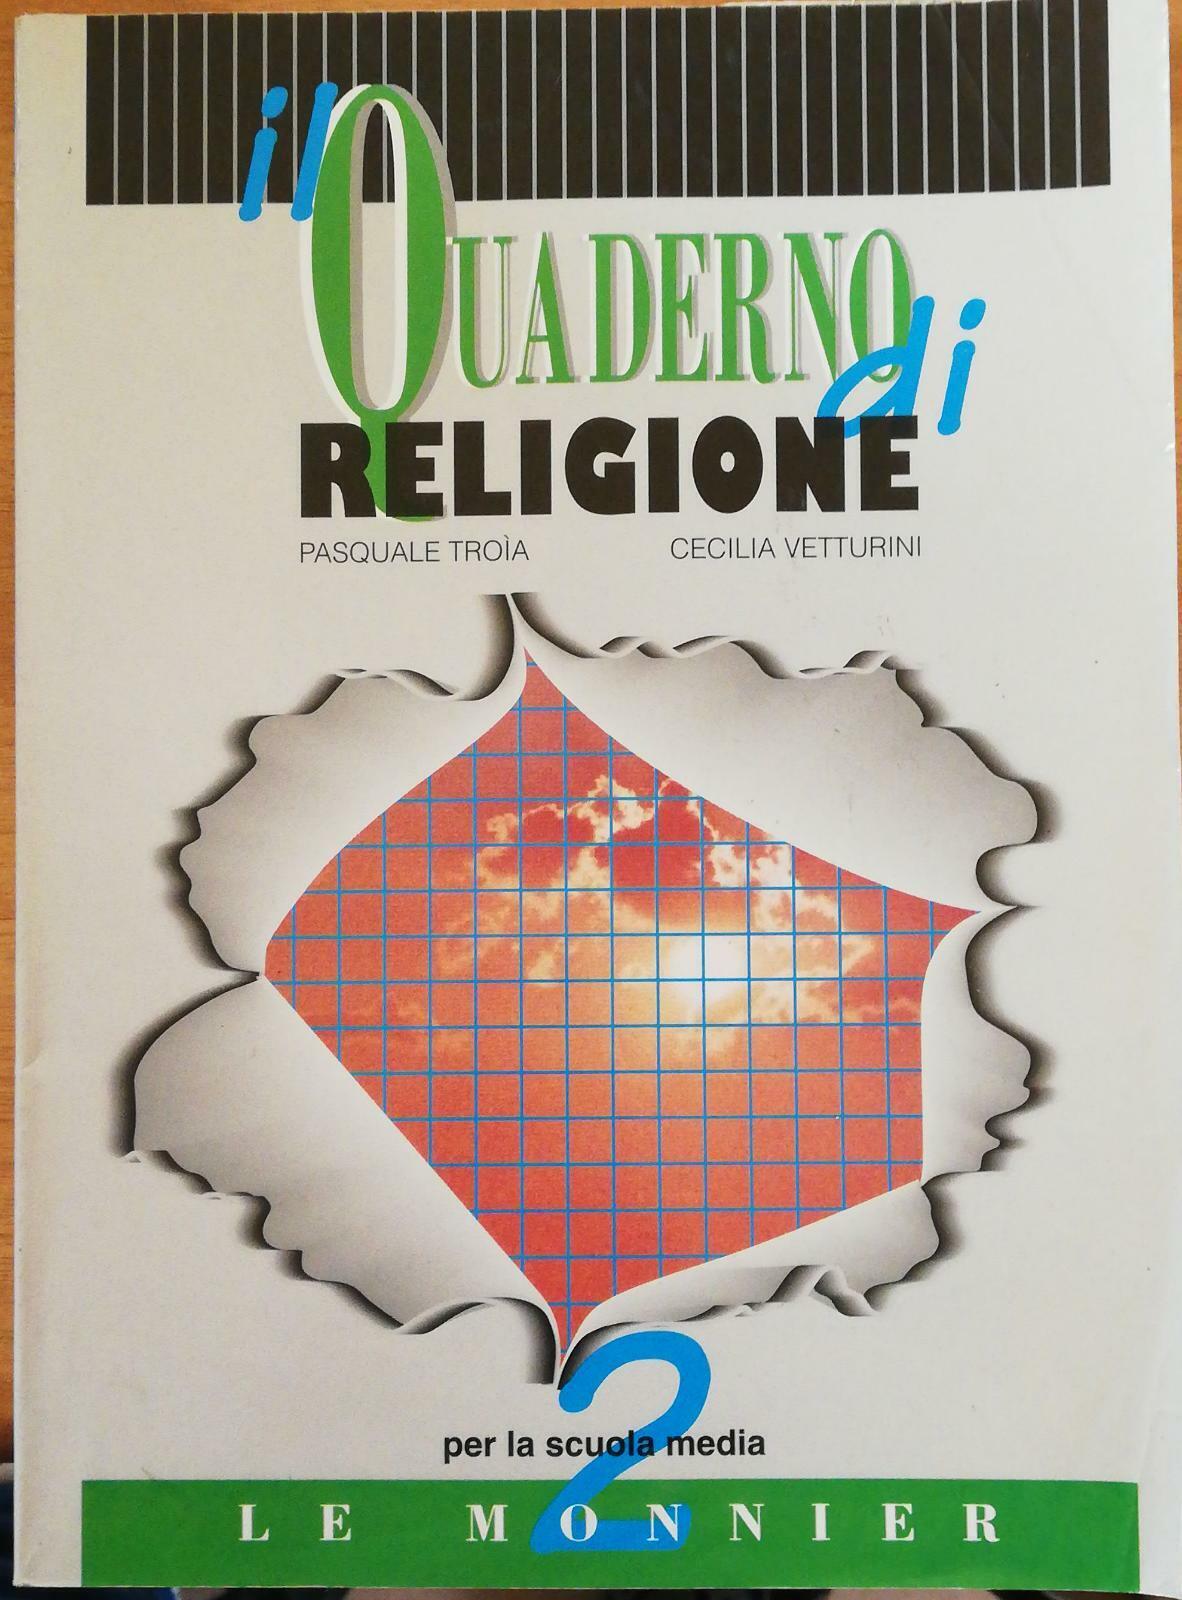 Il quaderno di religione 2 di Pasquale Tro?a, Cecilia Vetturini, 1996 -D